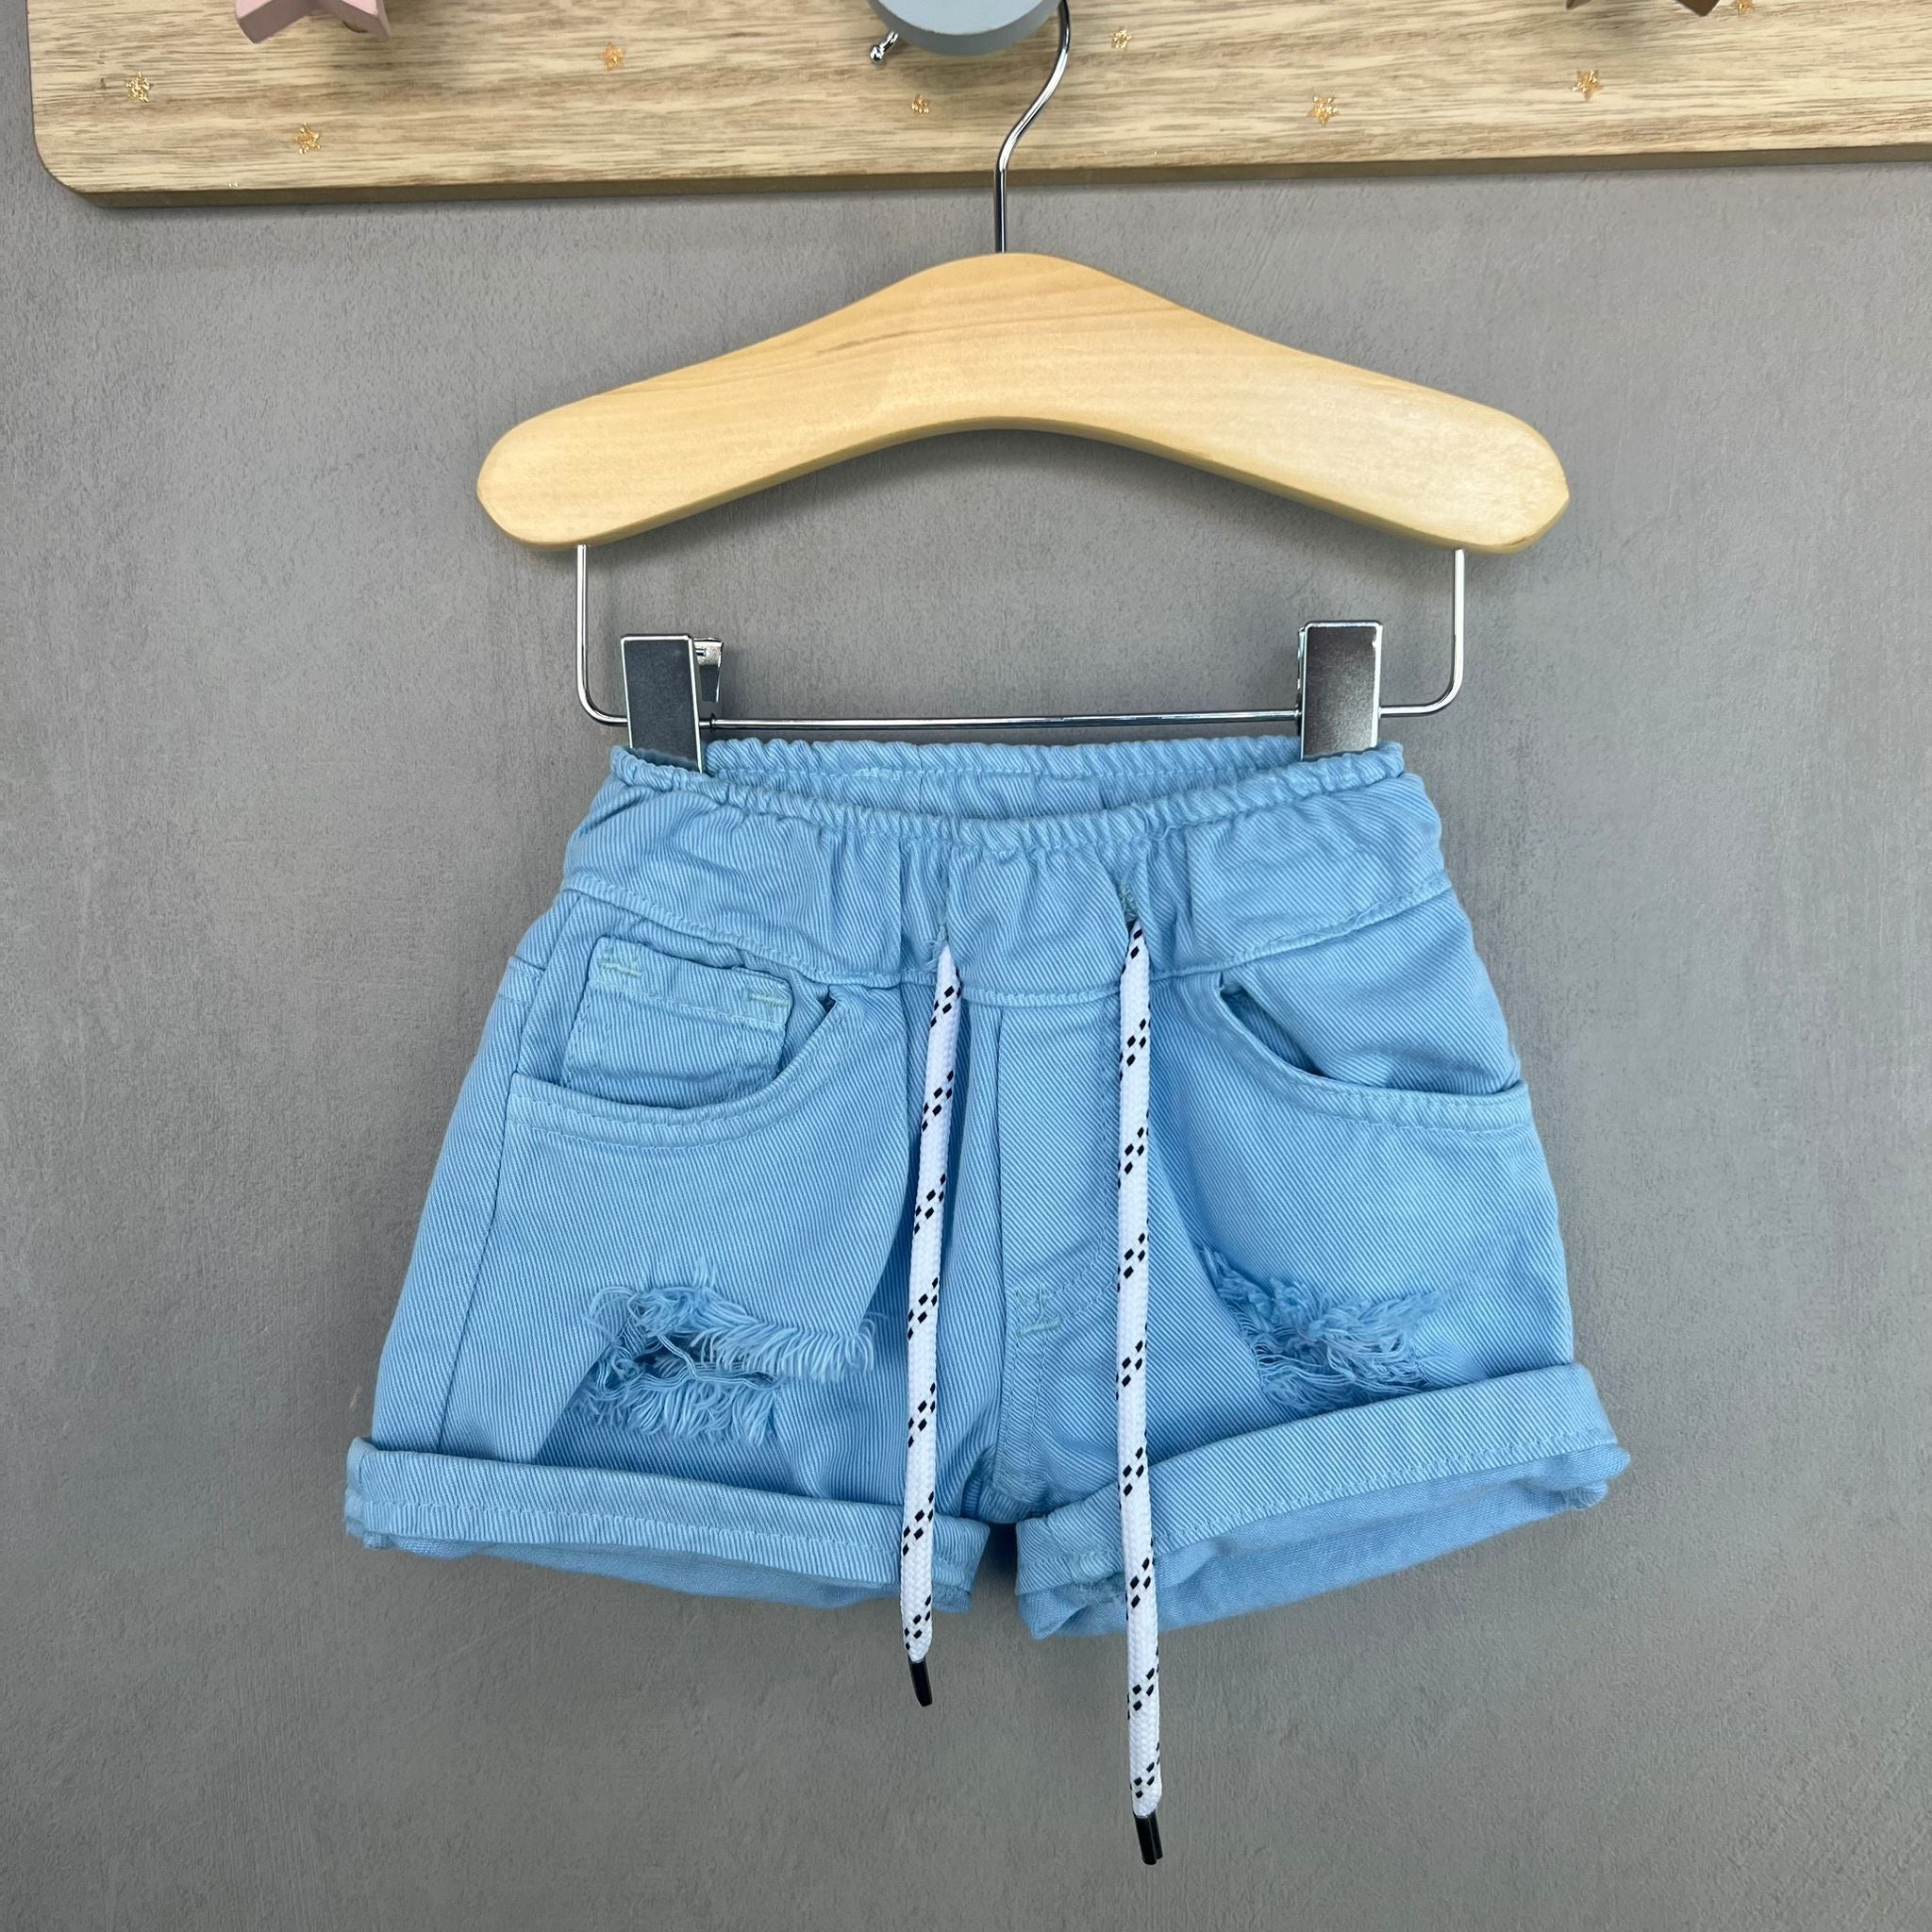 Bermuda in Jeans Neonato - Mstore016